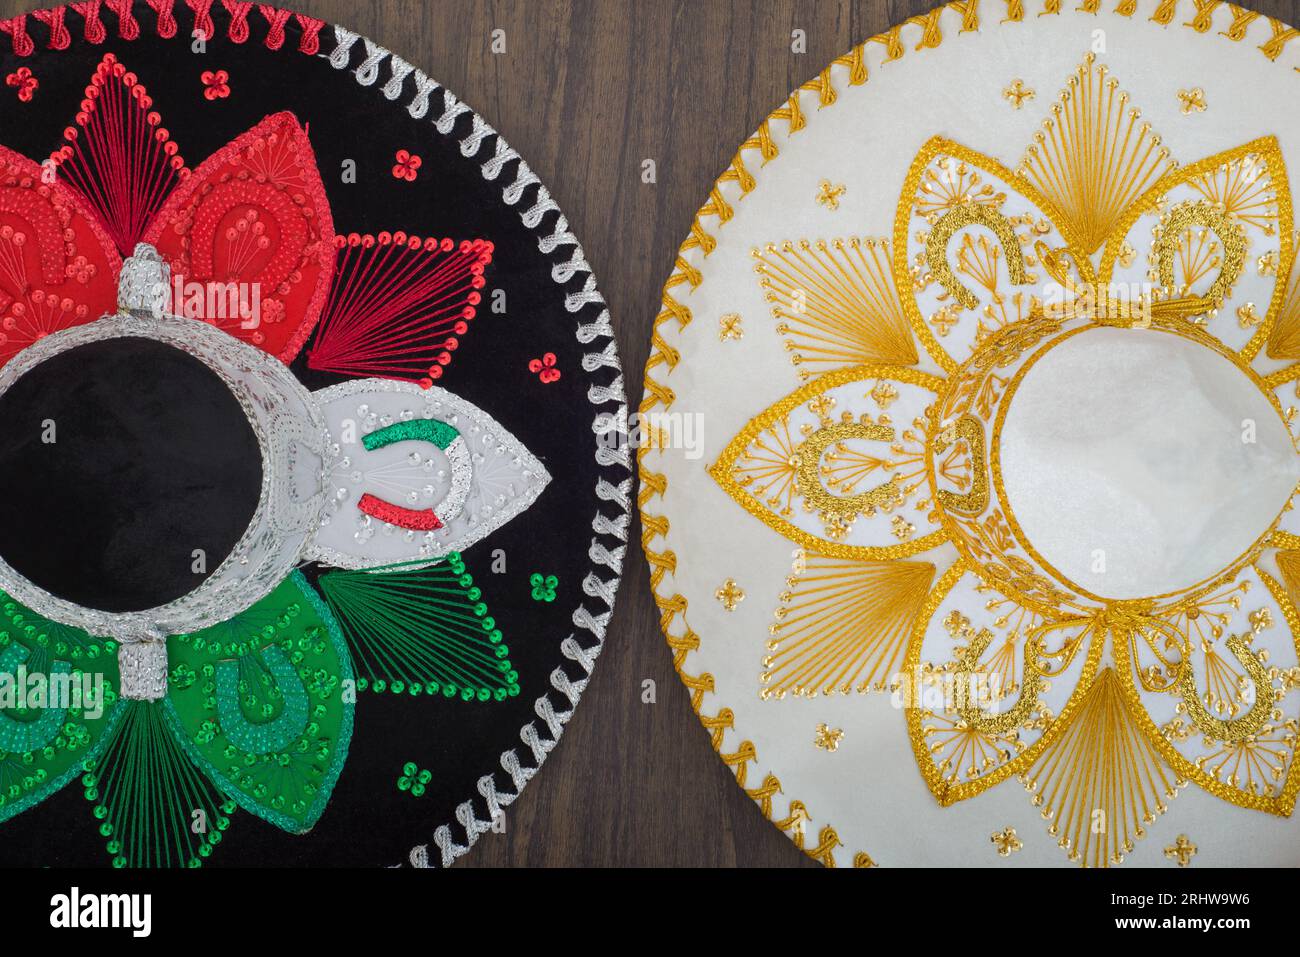 Chapeaux de charro mexicains sur la table en bois. Chapeaux Mariachi. Sombreros mexicains typiques. Banque D'Images